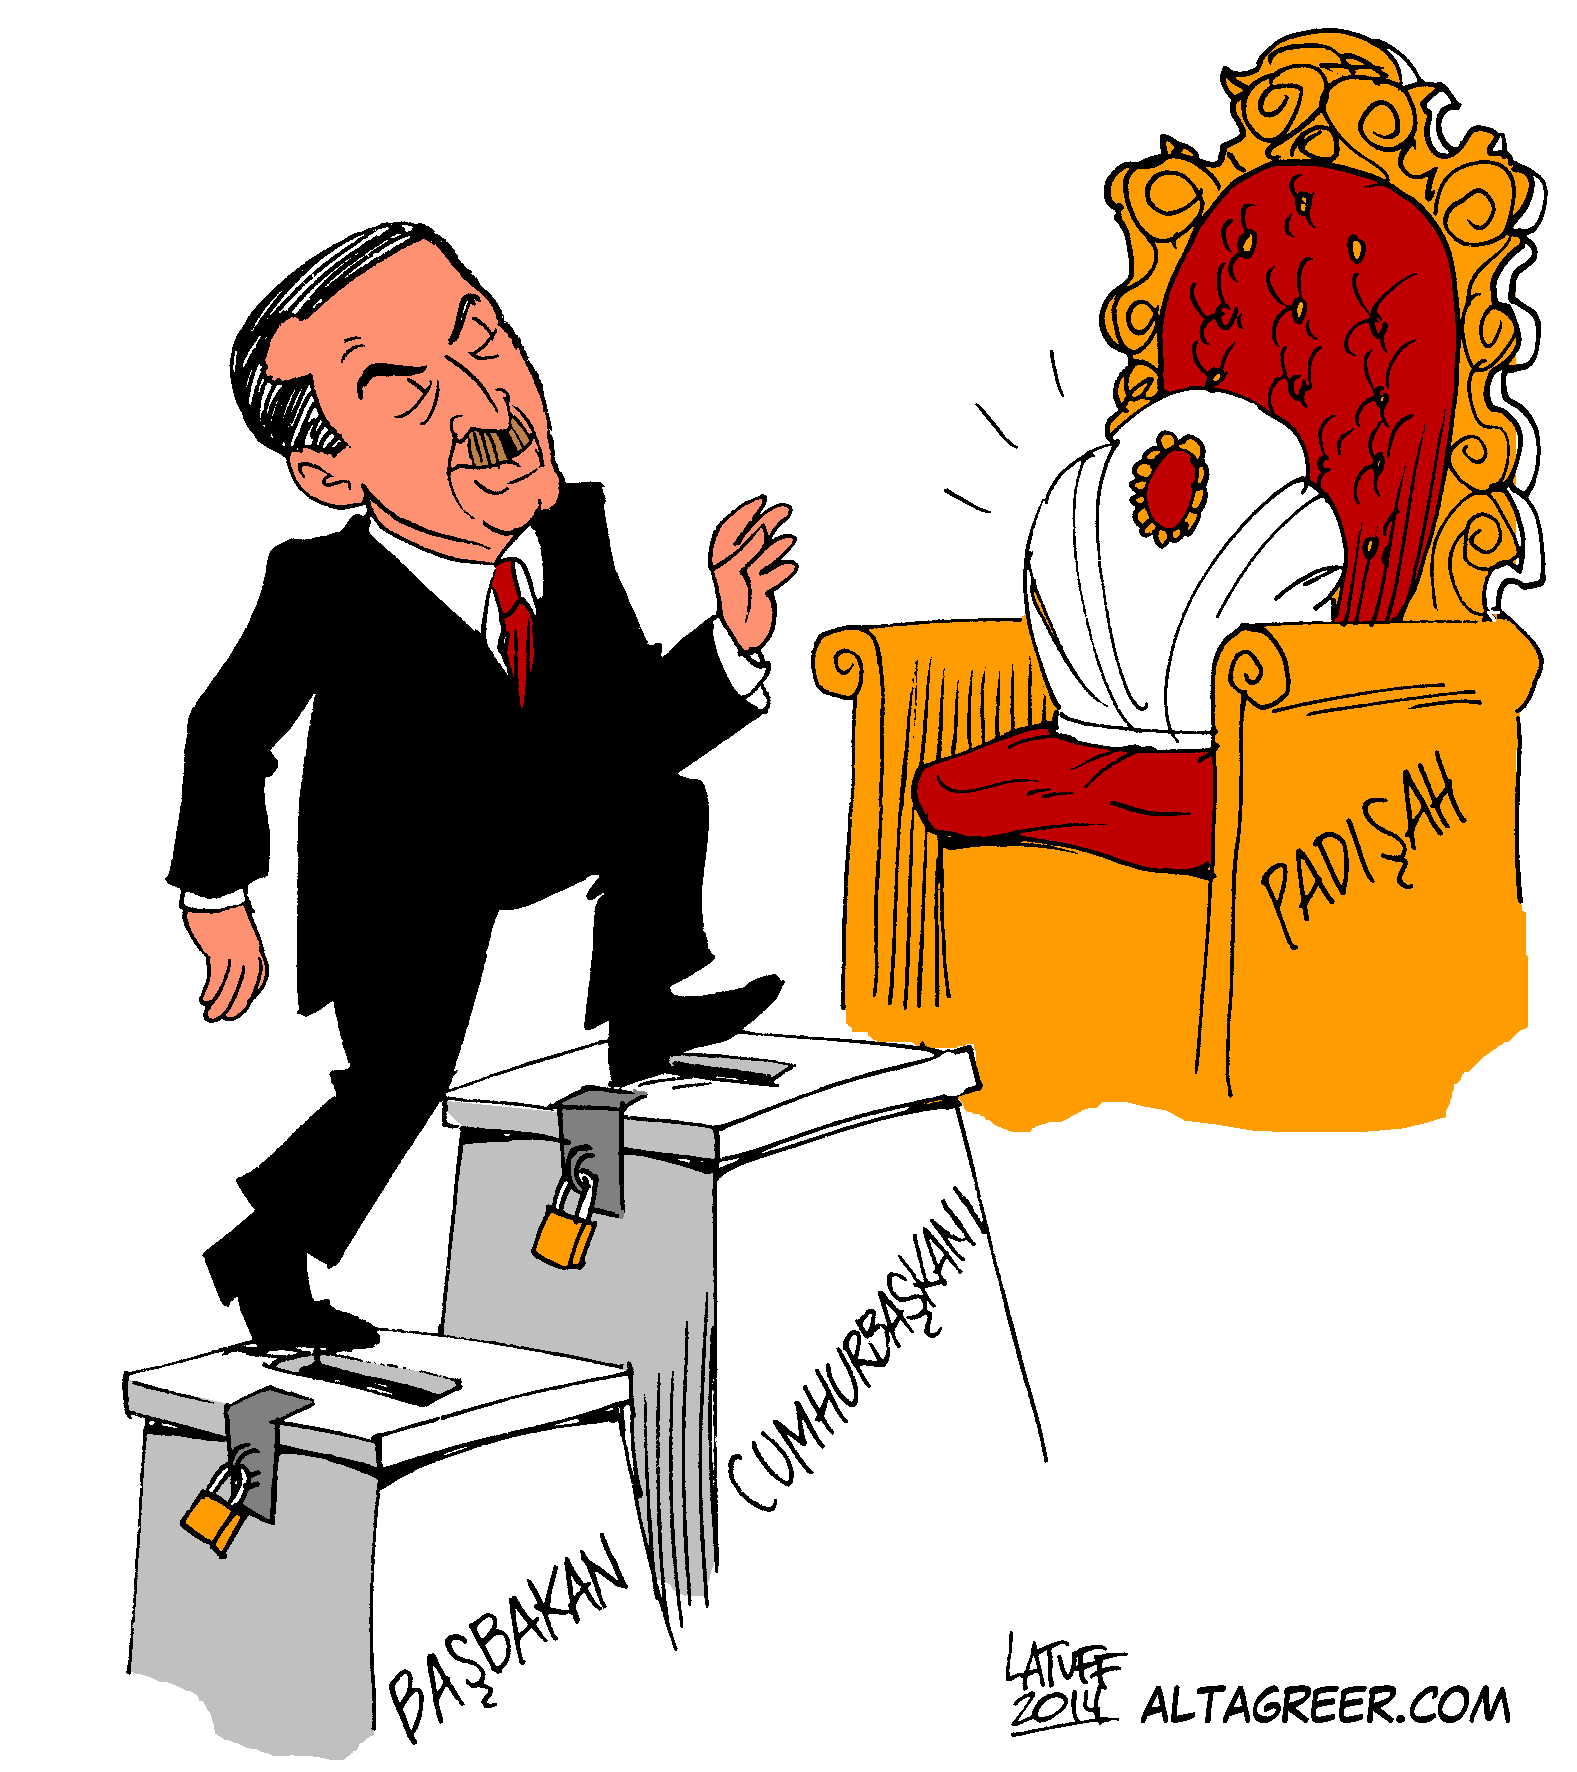 Erdoğan istedi, engellediler: Carlos Latuff'un karikatürlerine erişim engeli